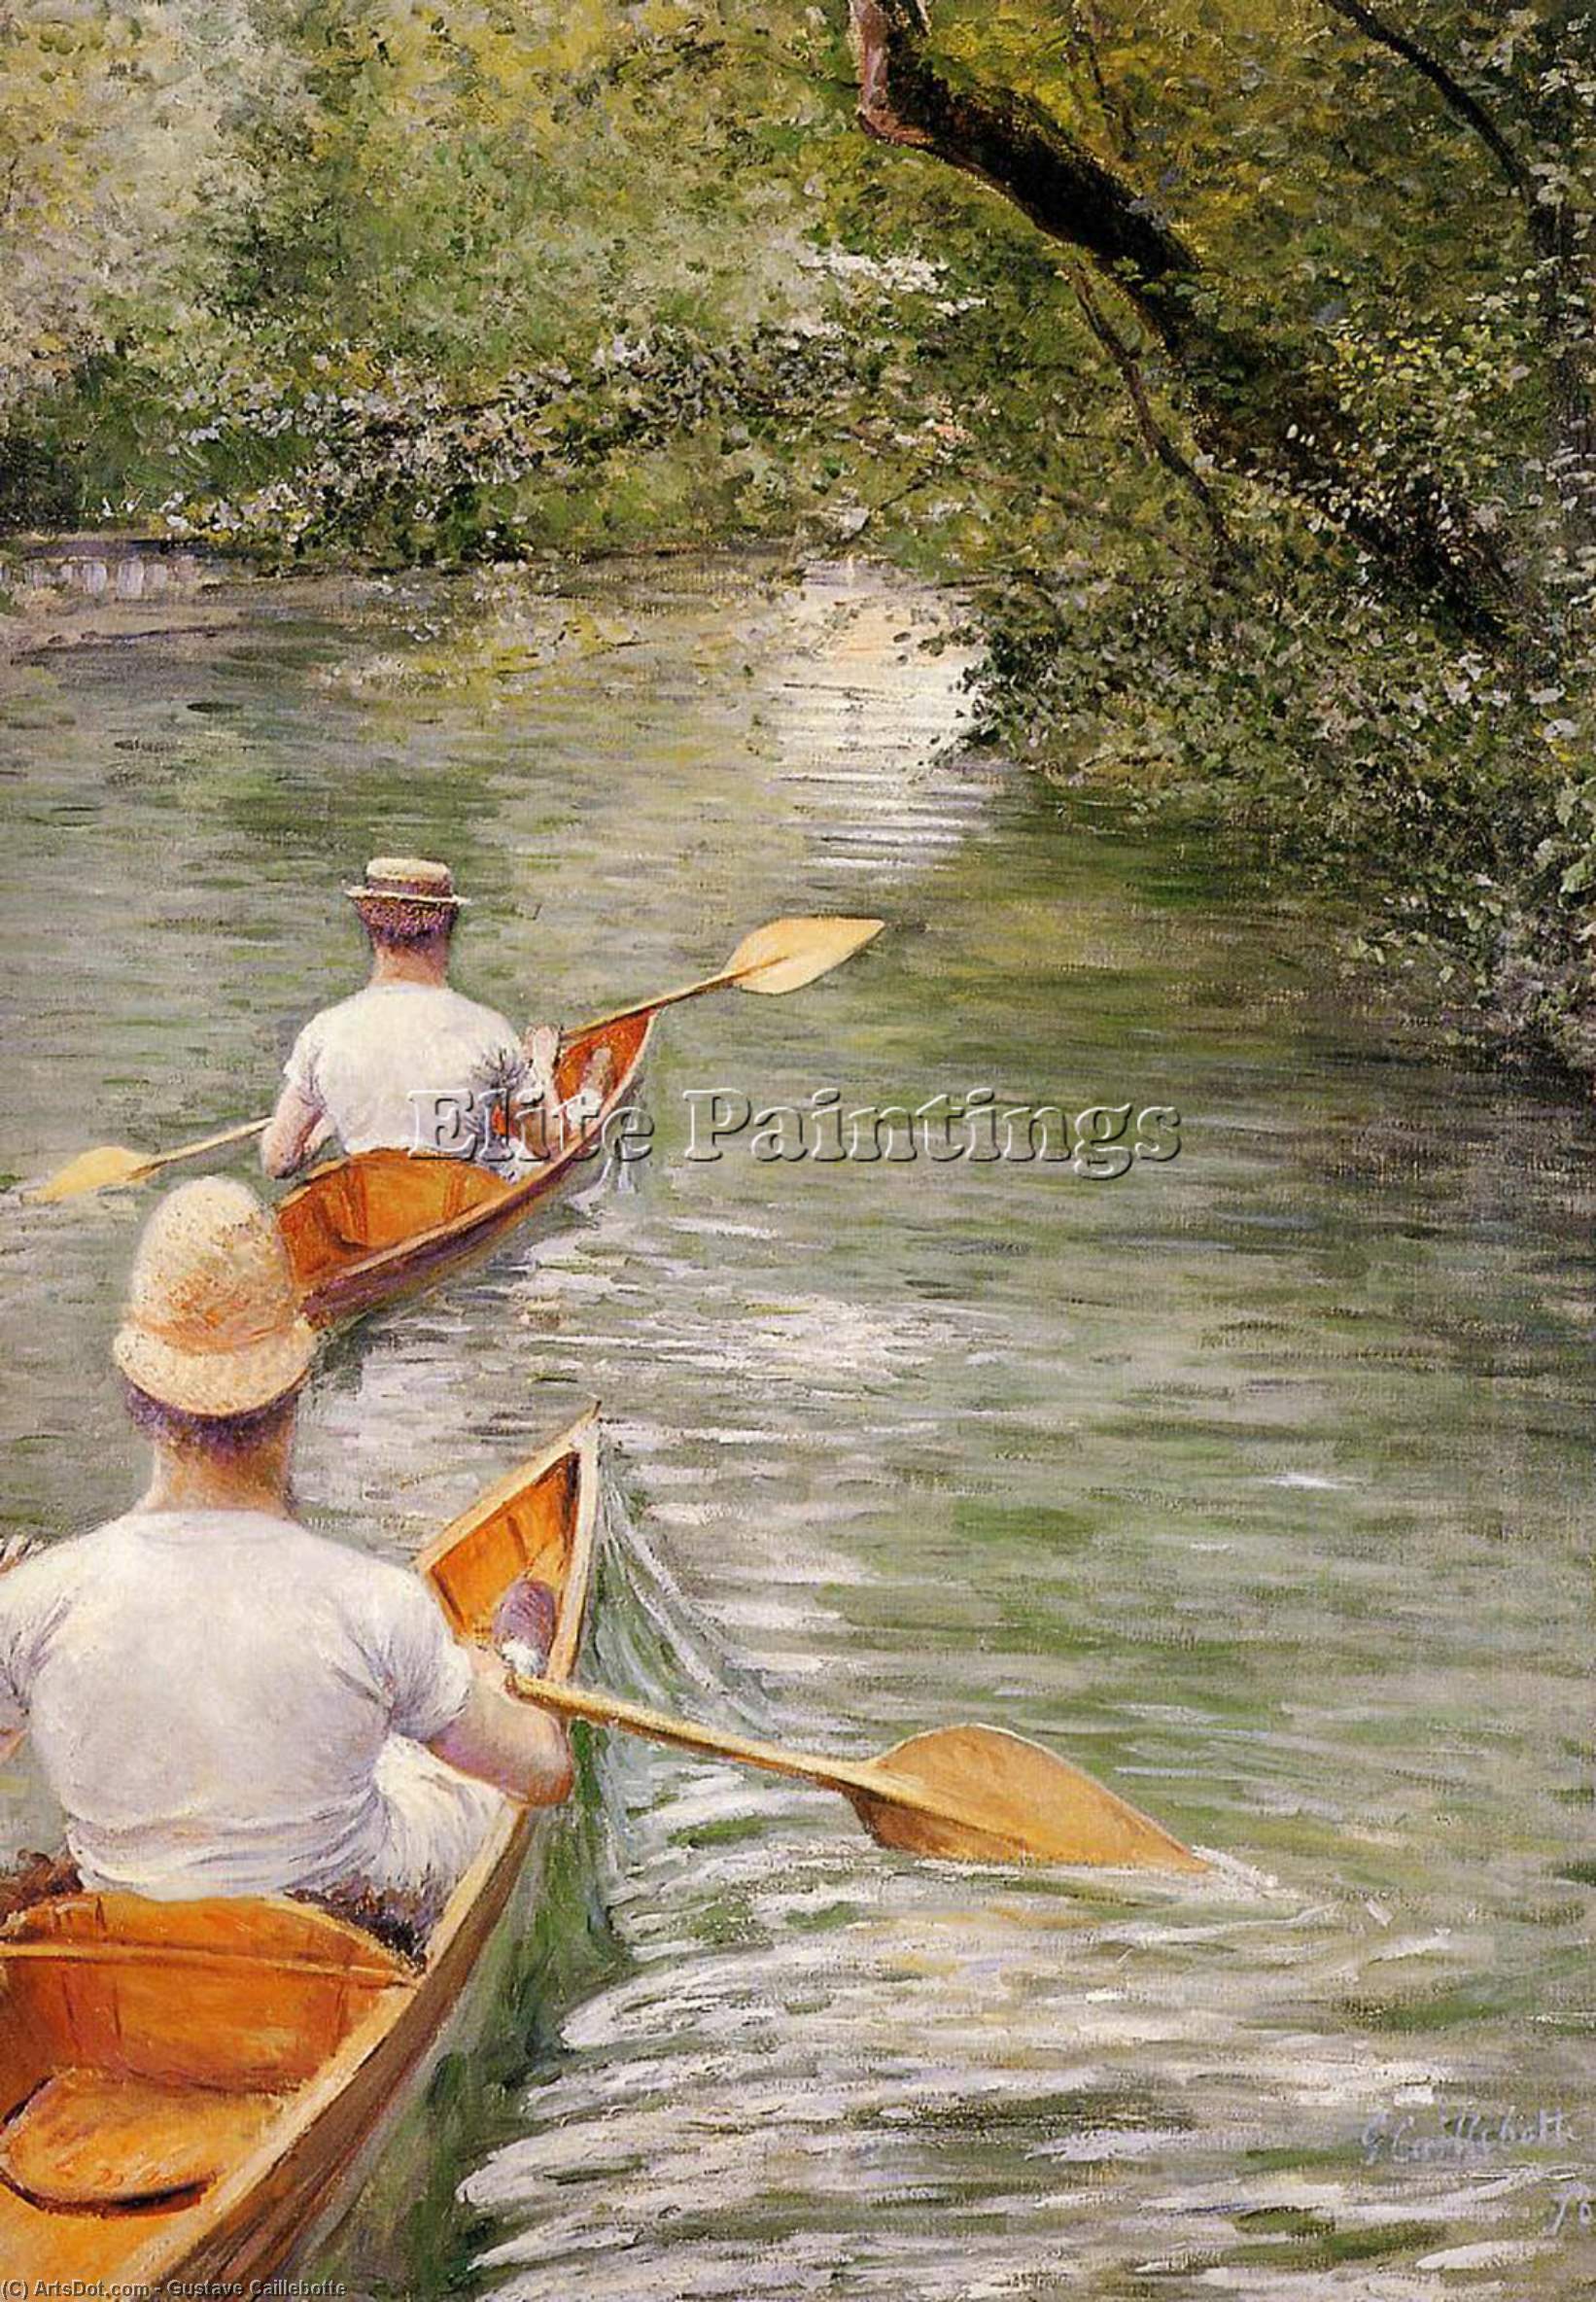 Wikoo.org - موسوعة الفنون الجميلة - اللوحة، العمل الفني Gustave Caillebotte - Perissoires aka The Canoes